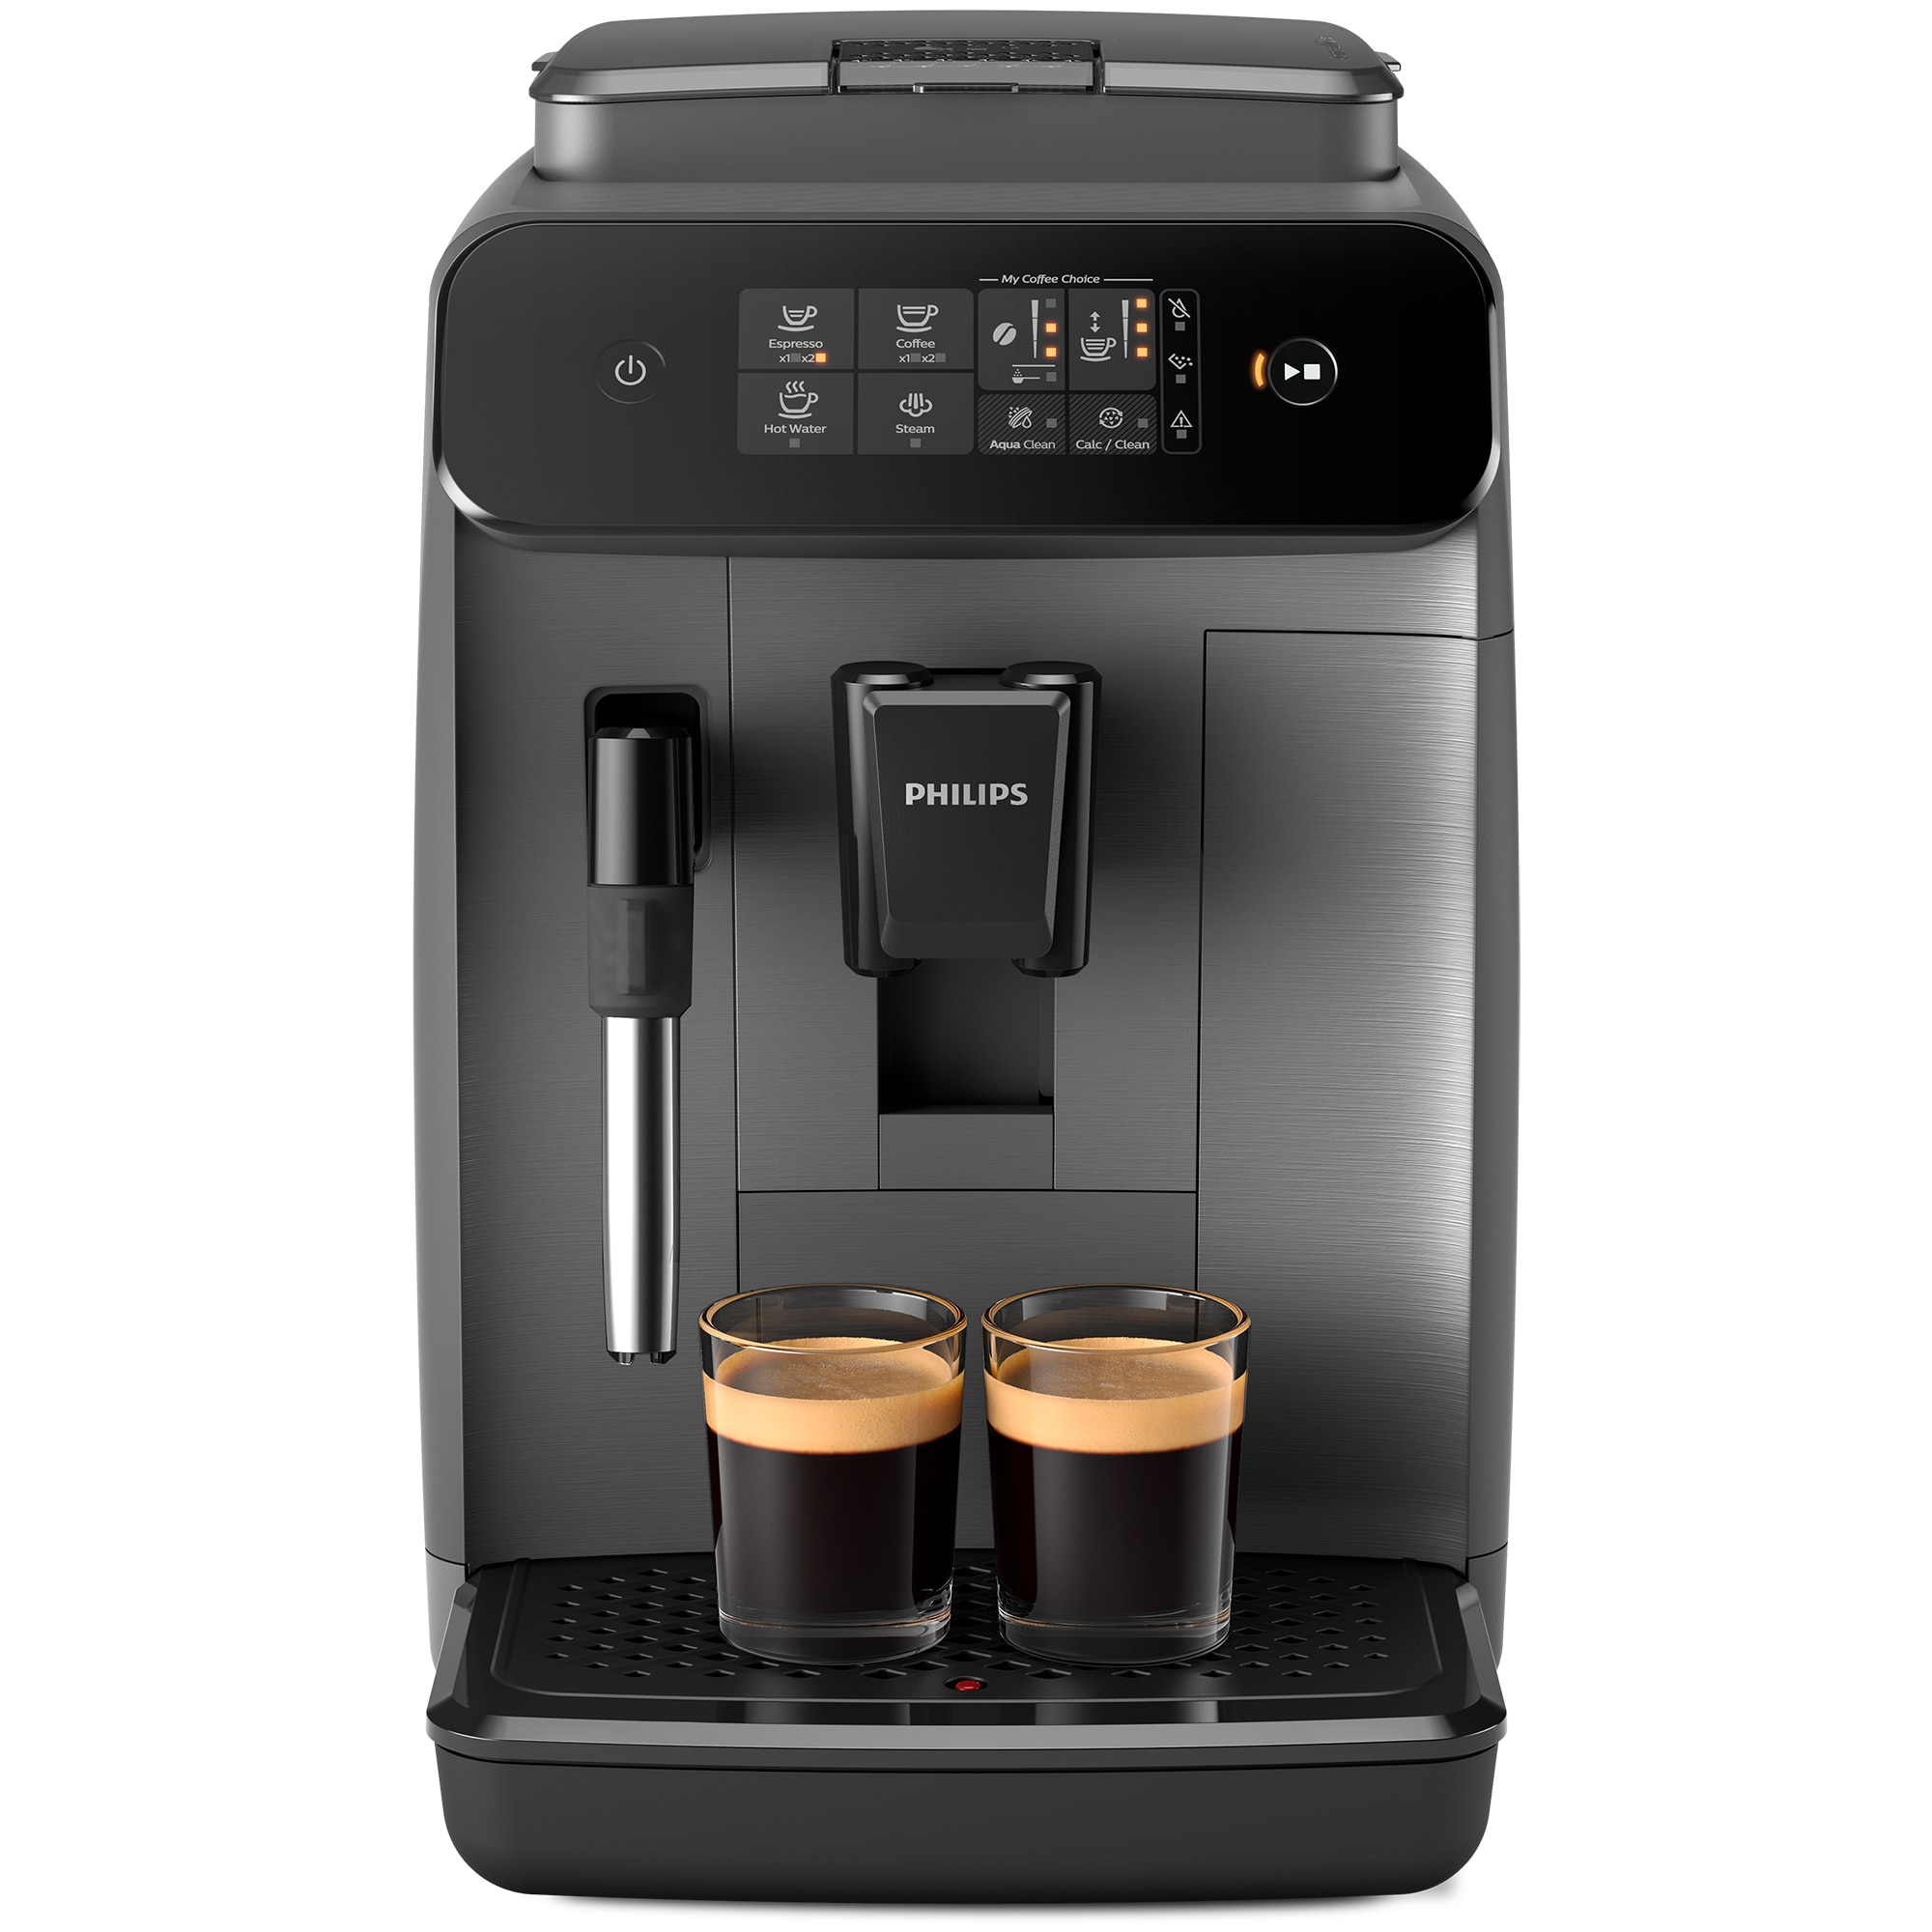 Fotografie Espressor automat Philips seria 800 EP0824/00, sistem clasic de spumare a laptelui, 2 varietati de cafea, rasnita ceramica, display intuitiv, posibilitate de ajustare a tariei si a cantitatii de cafea